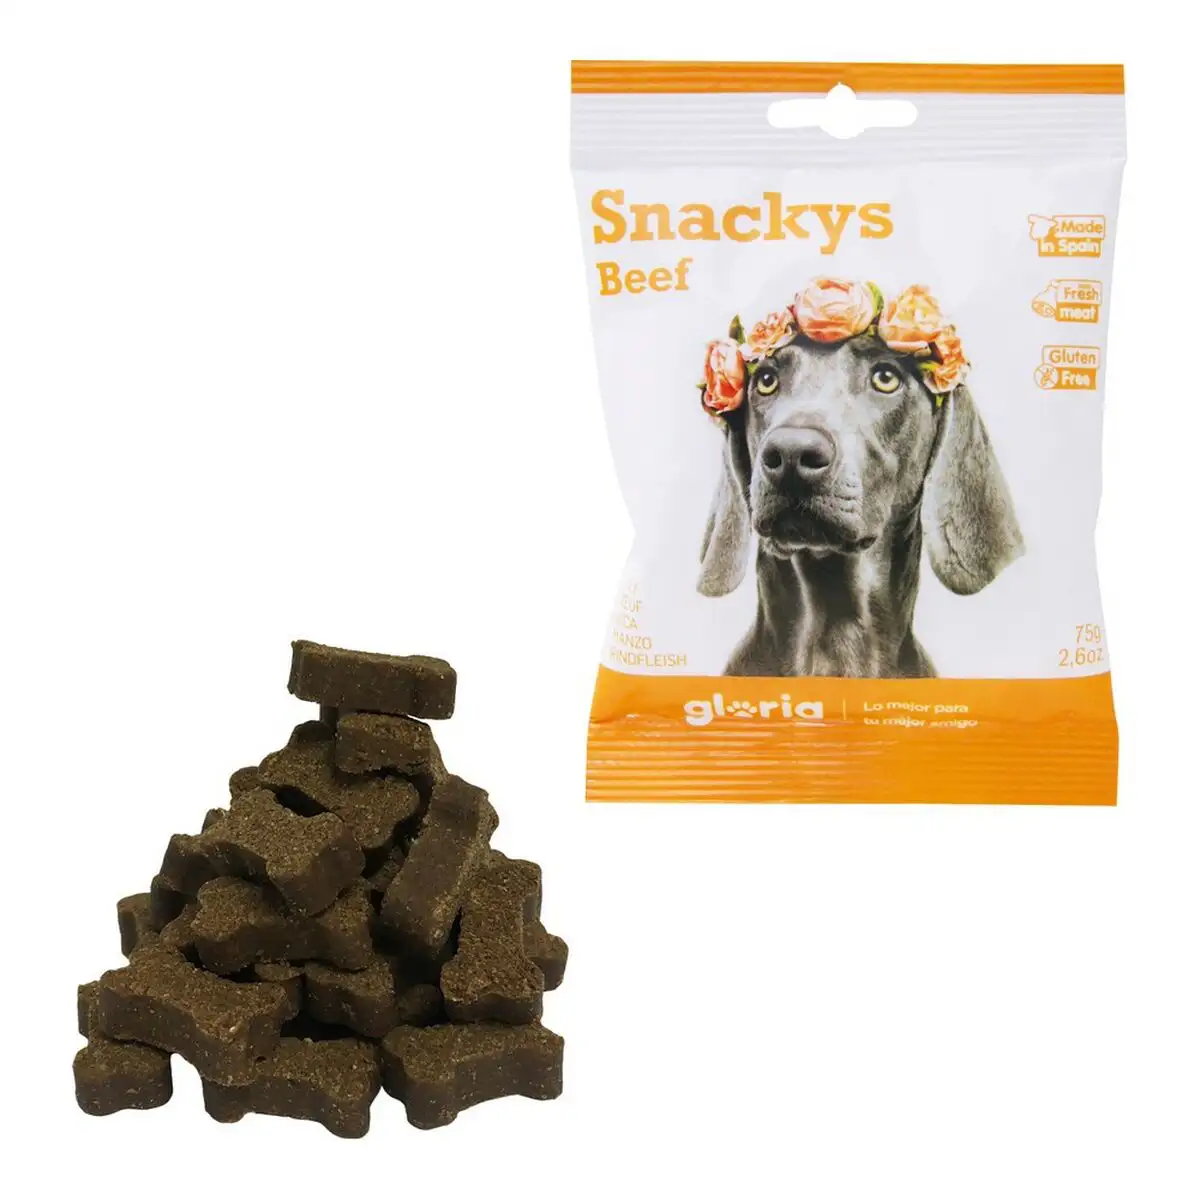 Snack pour chiens gloria display snackys 30 x 75 g boeuf_7496. DIAYTAR SENEGAL - L'Art du Shopping Facilité. Naviguez sur notre plateforme en ligne pour découvrir une expérience d'achat fluide et agréable, avec une gamme de produits adaptés à tous.